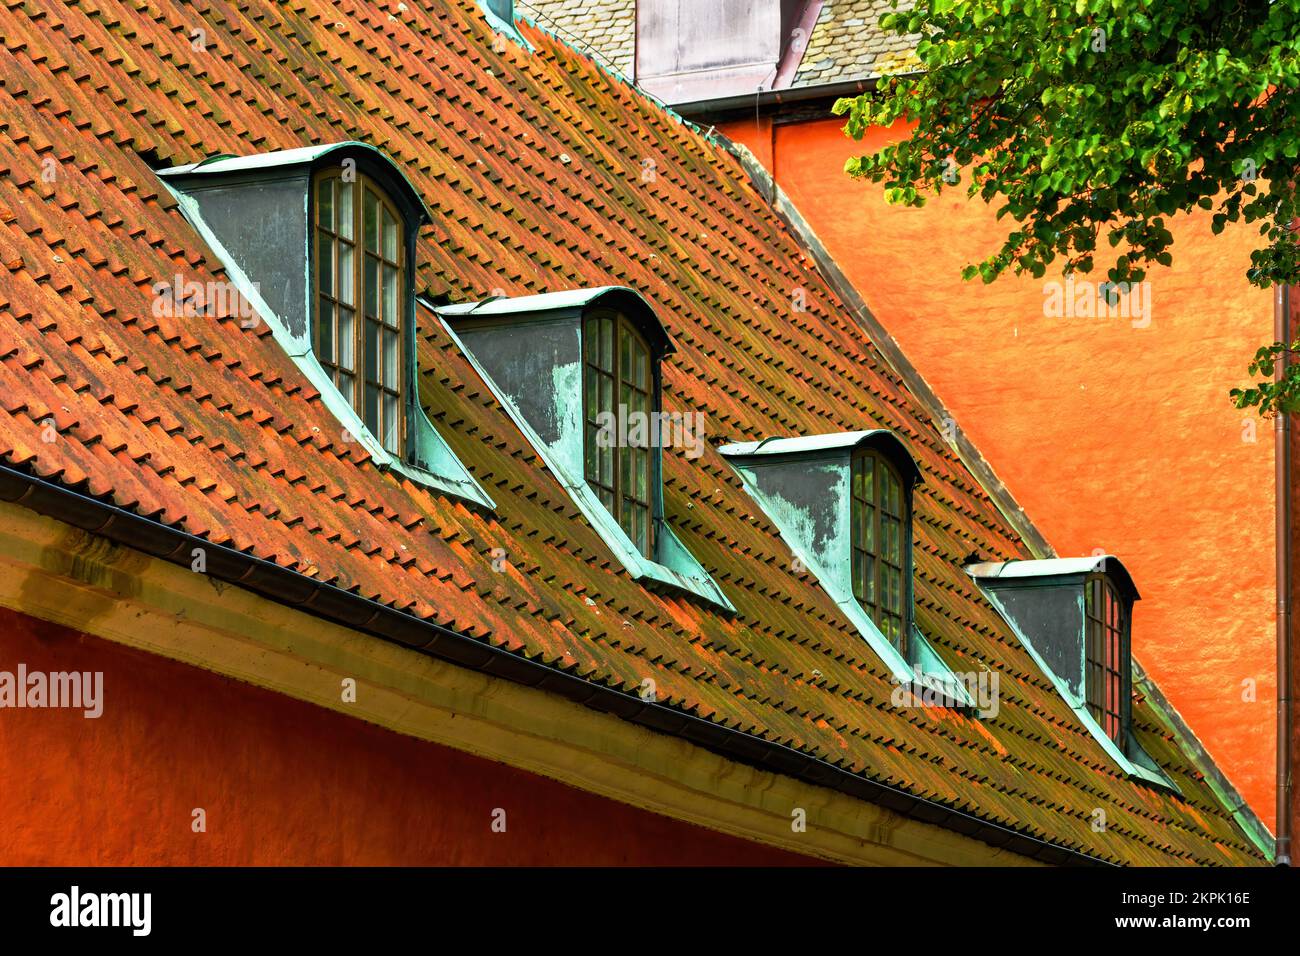 Old attic dormer roof window in Halmstad, Sweden Stock Photo